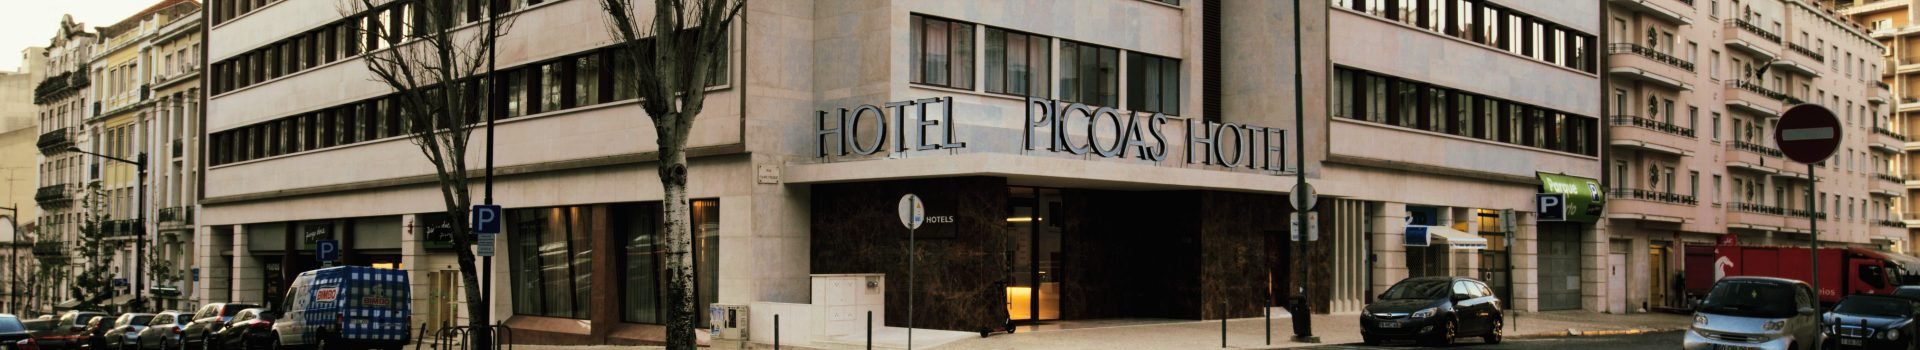 Ubicación & Contacto VIP Executive Picoas Hotel Lisboa